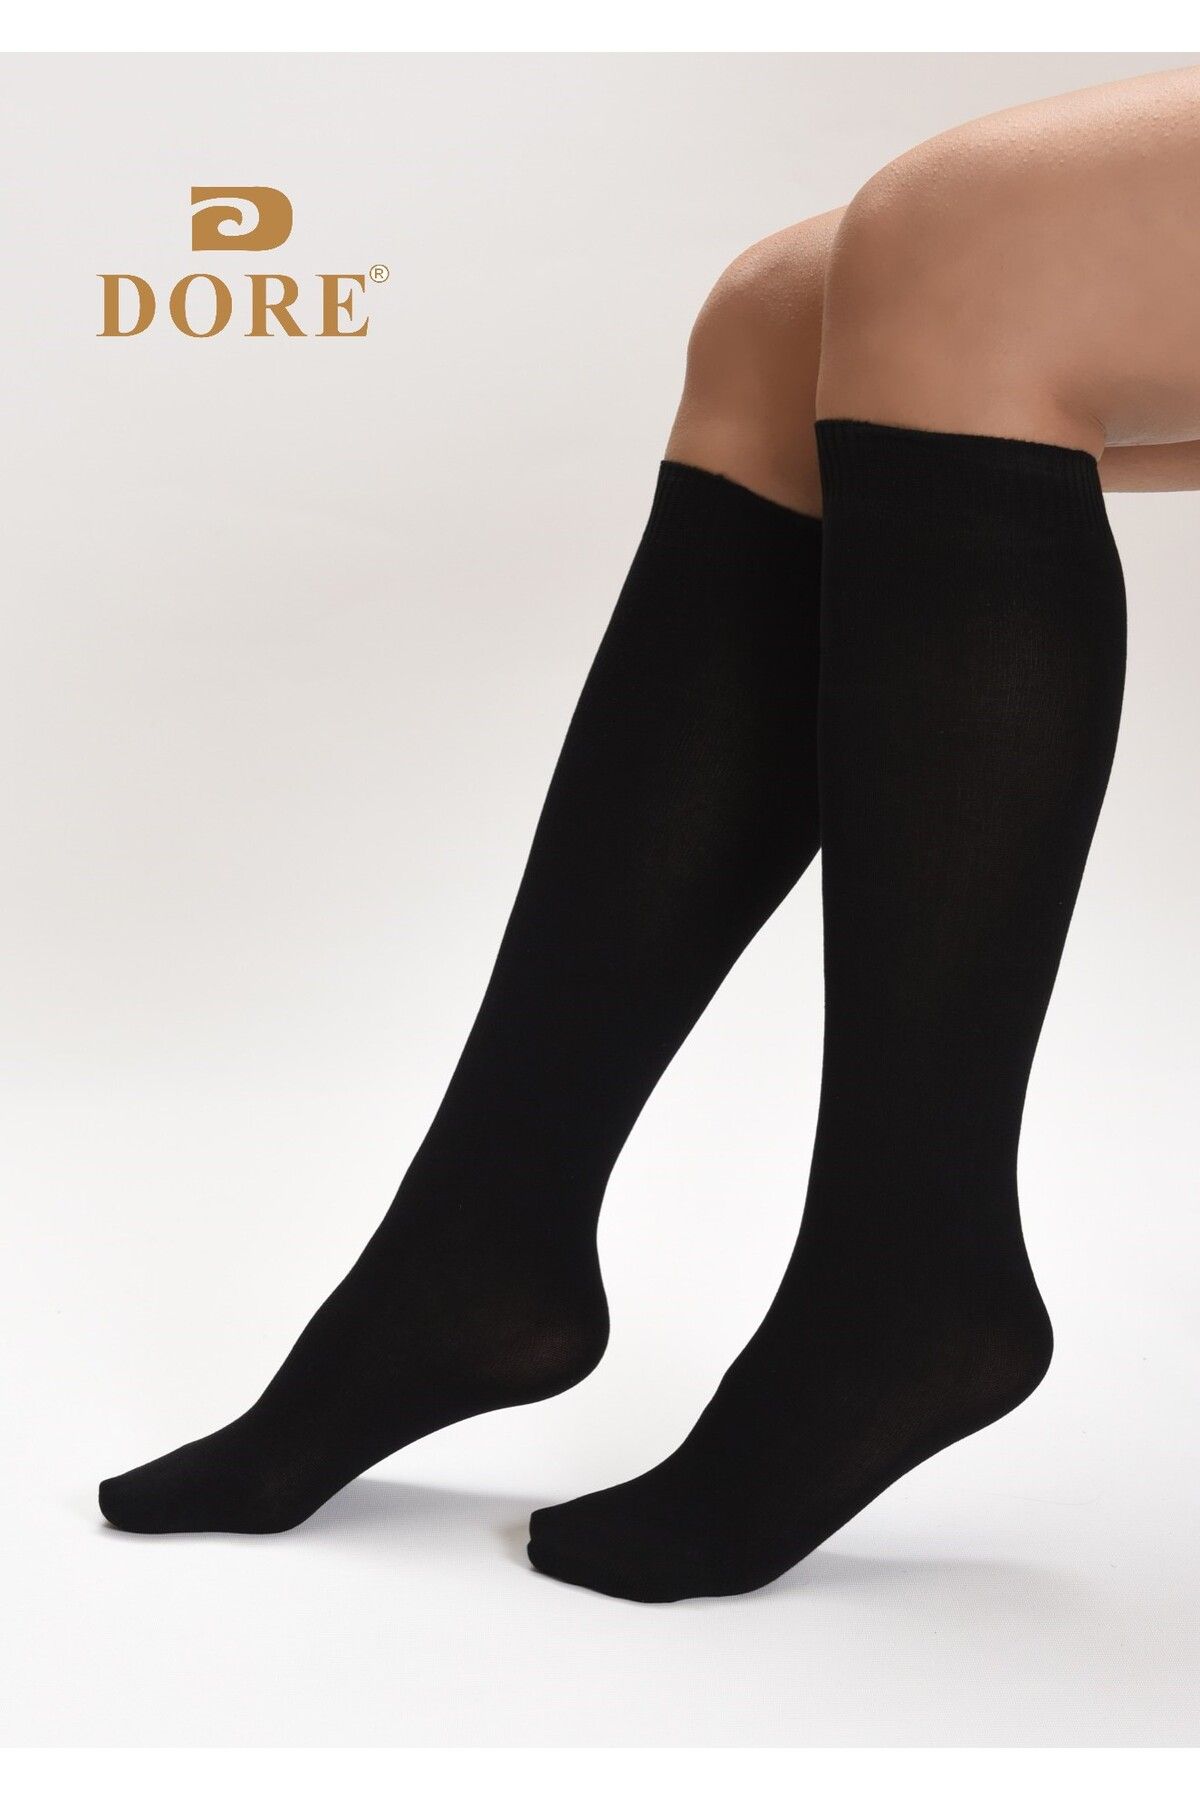 DORE Premium Siyah Renk Teni Göstermeyen Kadın Dikişsiz Dizaltı Çorap